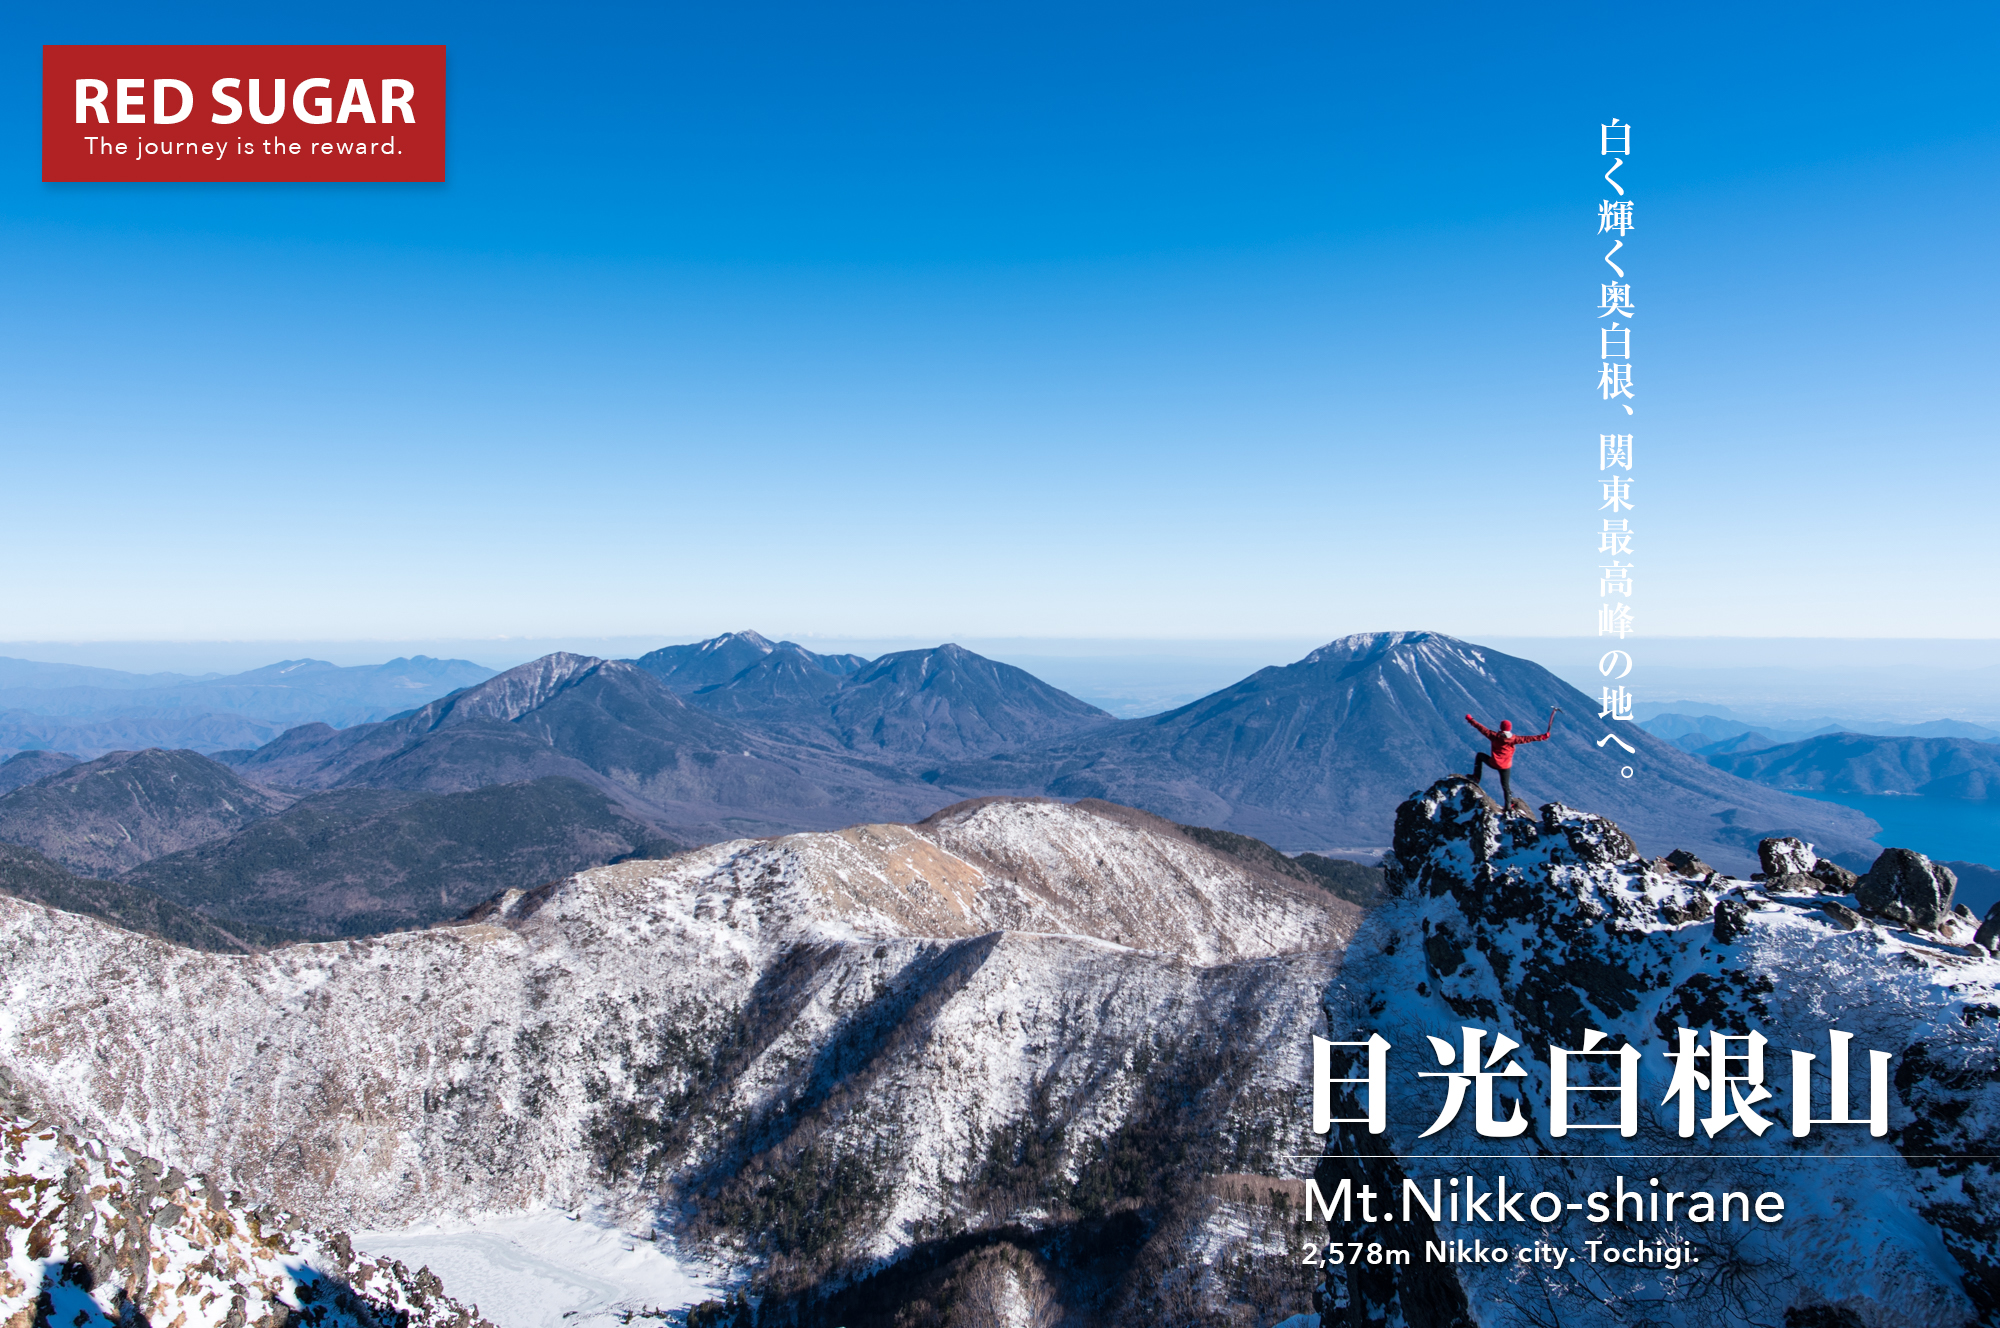 北関東 日光白根山 白銀に染まる関東最高峰 冬の始まりを告げる雪山登山の旅 Red Sugar